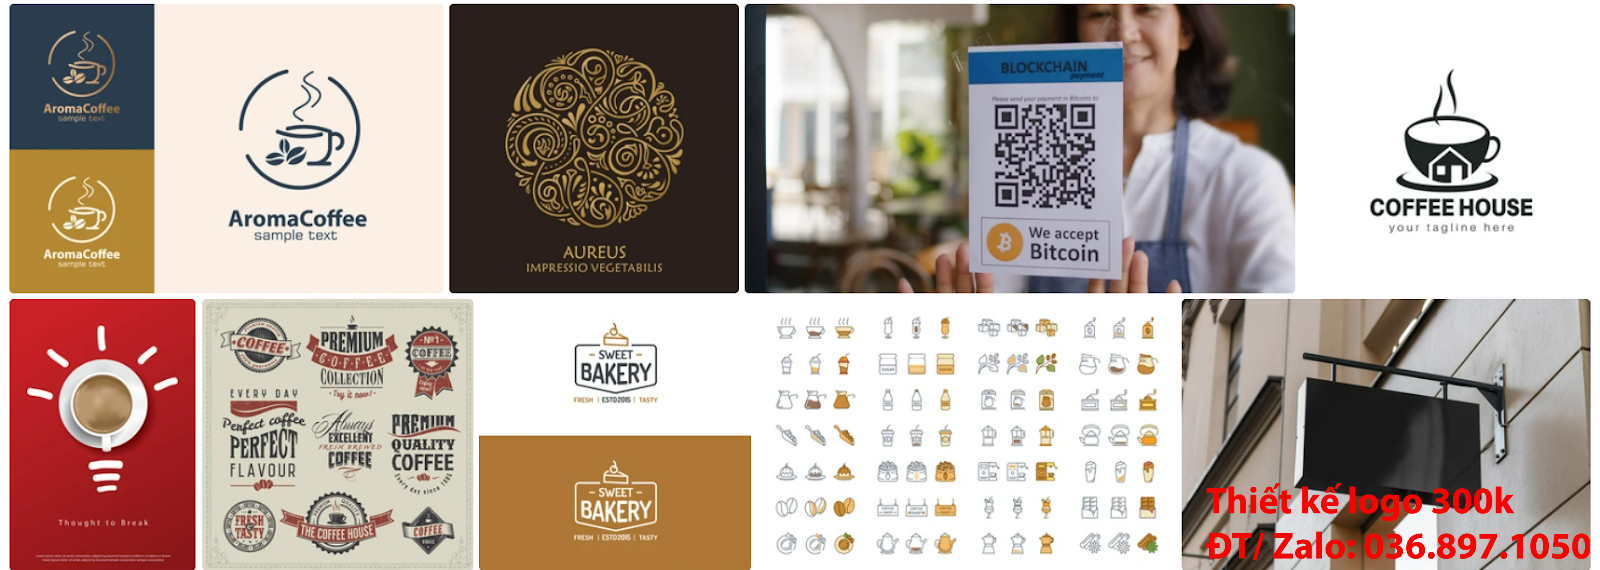 Công ty cung cấp mẫu hình ảnh logo cà phê cafe coffee PNG và Vector đẹp đơn giản